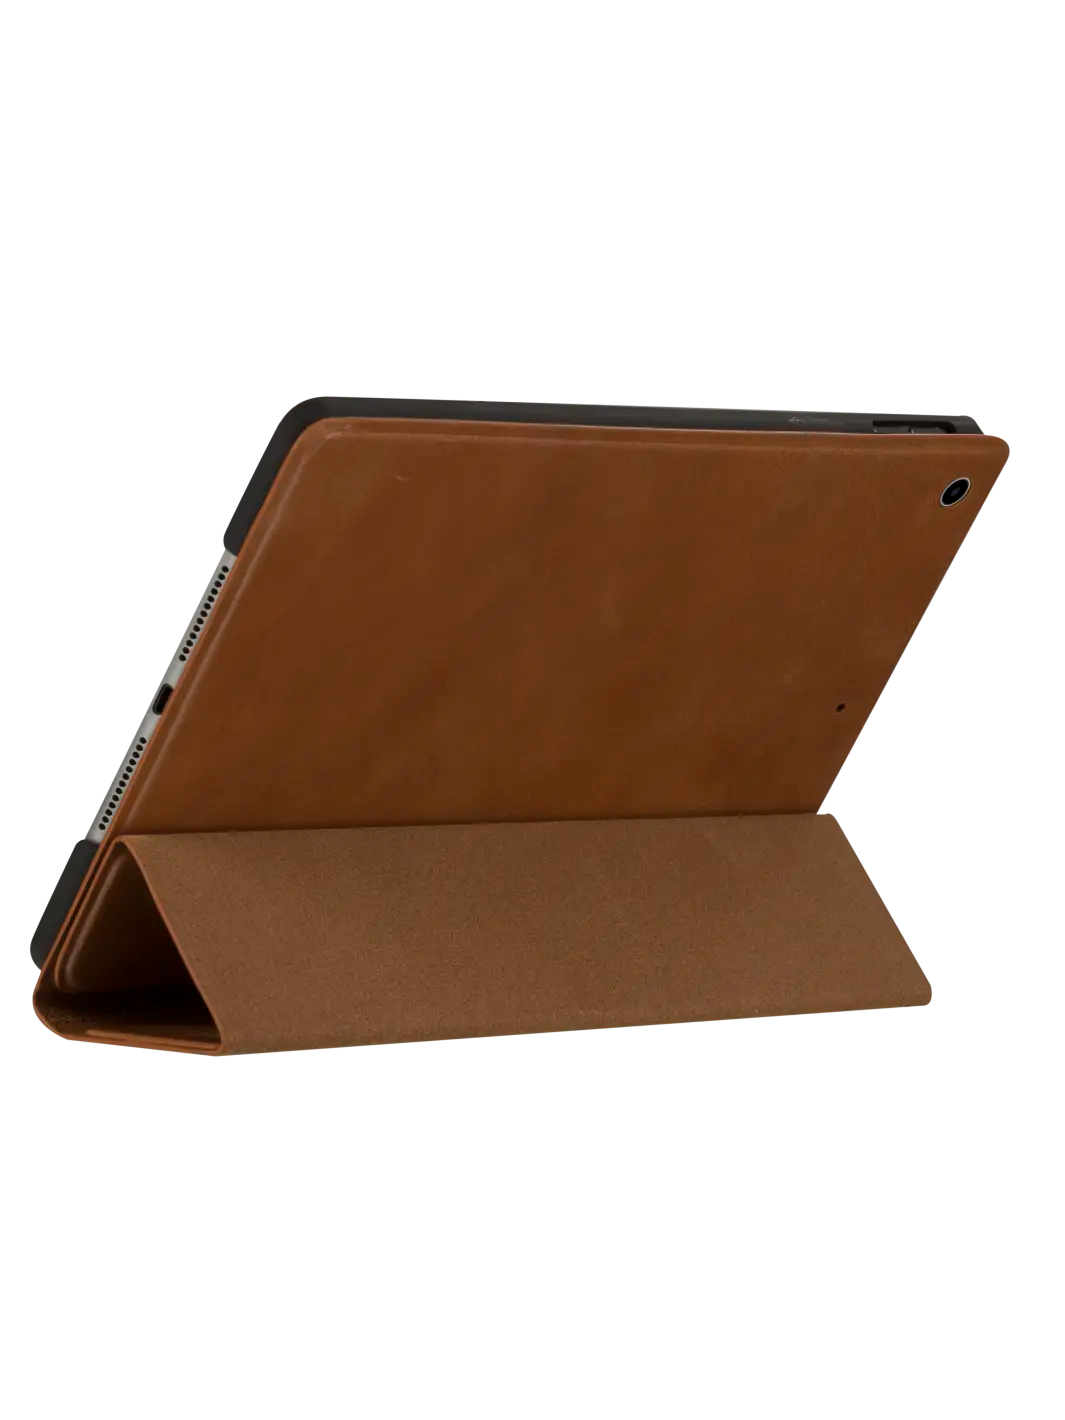 Risskov iPad case Tan iPad 10.2" (7 8 9th Gen) iPad Cases